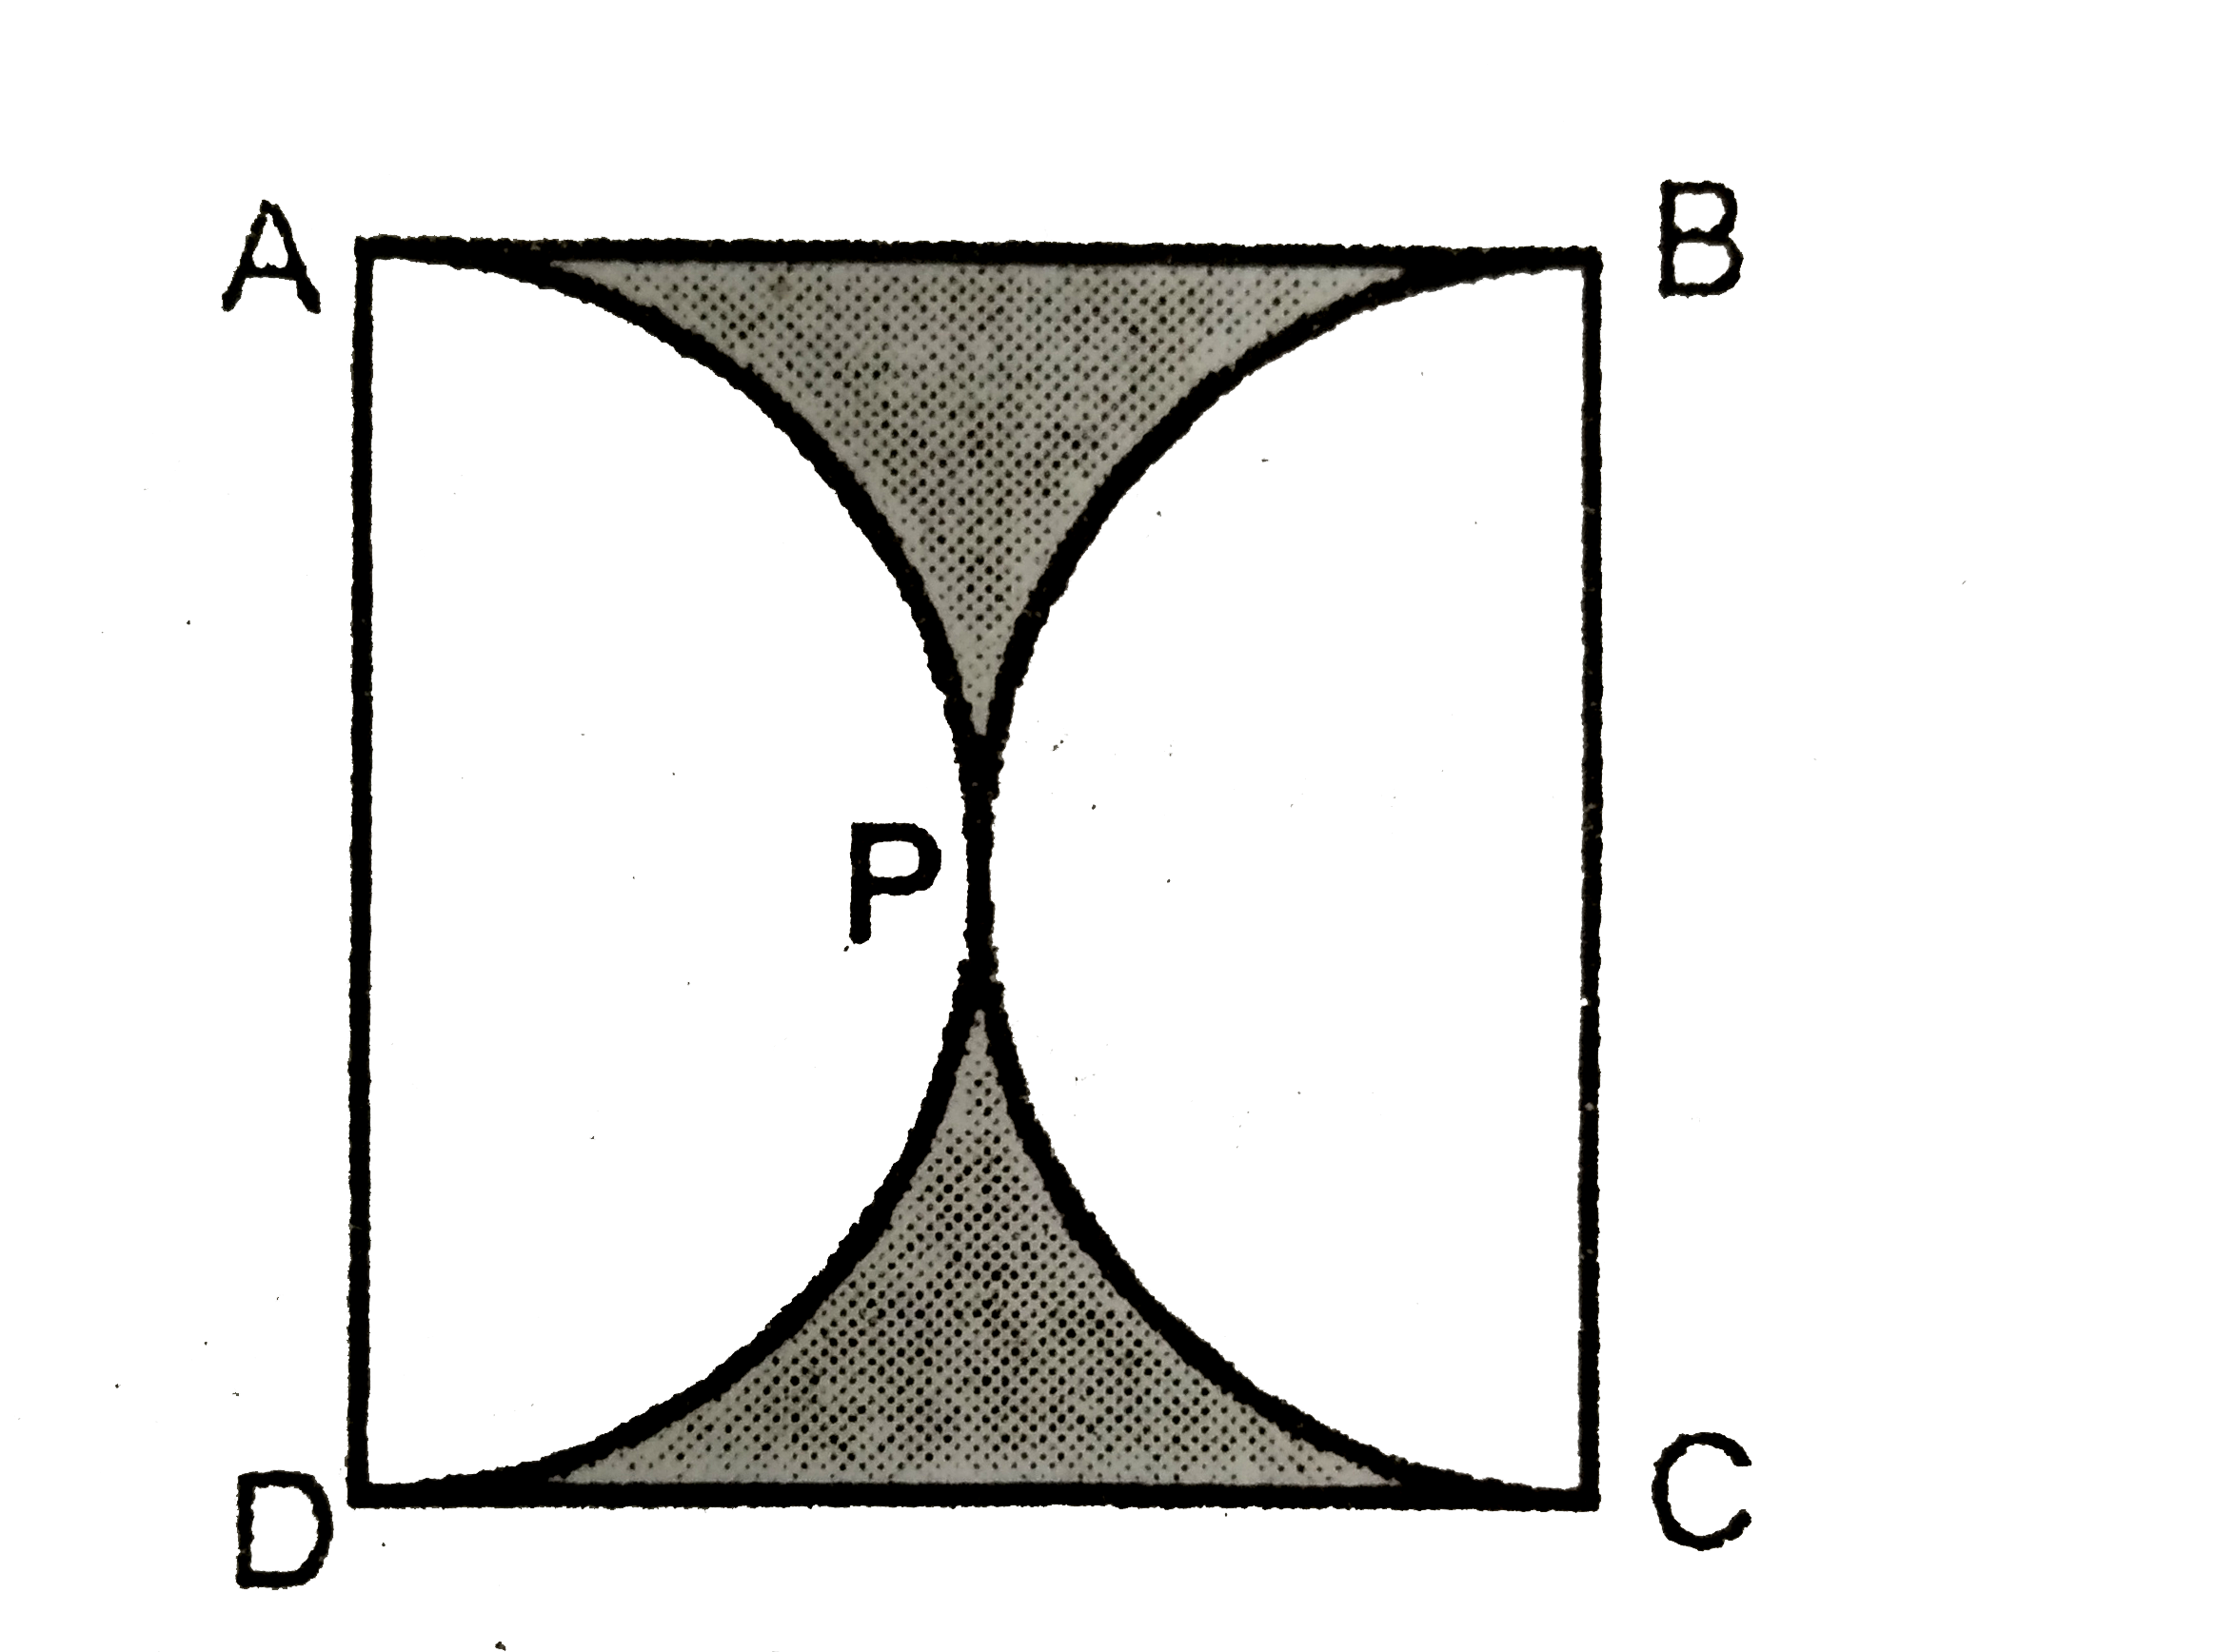 दिए गए  चित्र  में ABCD  एक  वर्ग  है  जिसकी  भुजा  14 cm   है।  APD  और BPC   अर्द्धवृत  है।   छायांकित  क्षेत्र  का क्षेत्रफल  ज्ञात  करे।